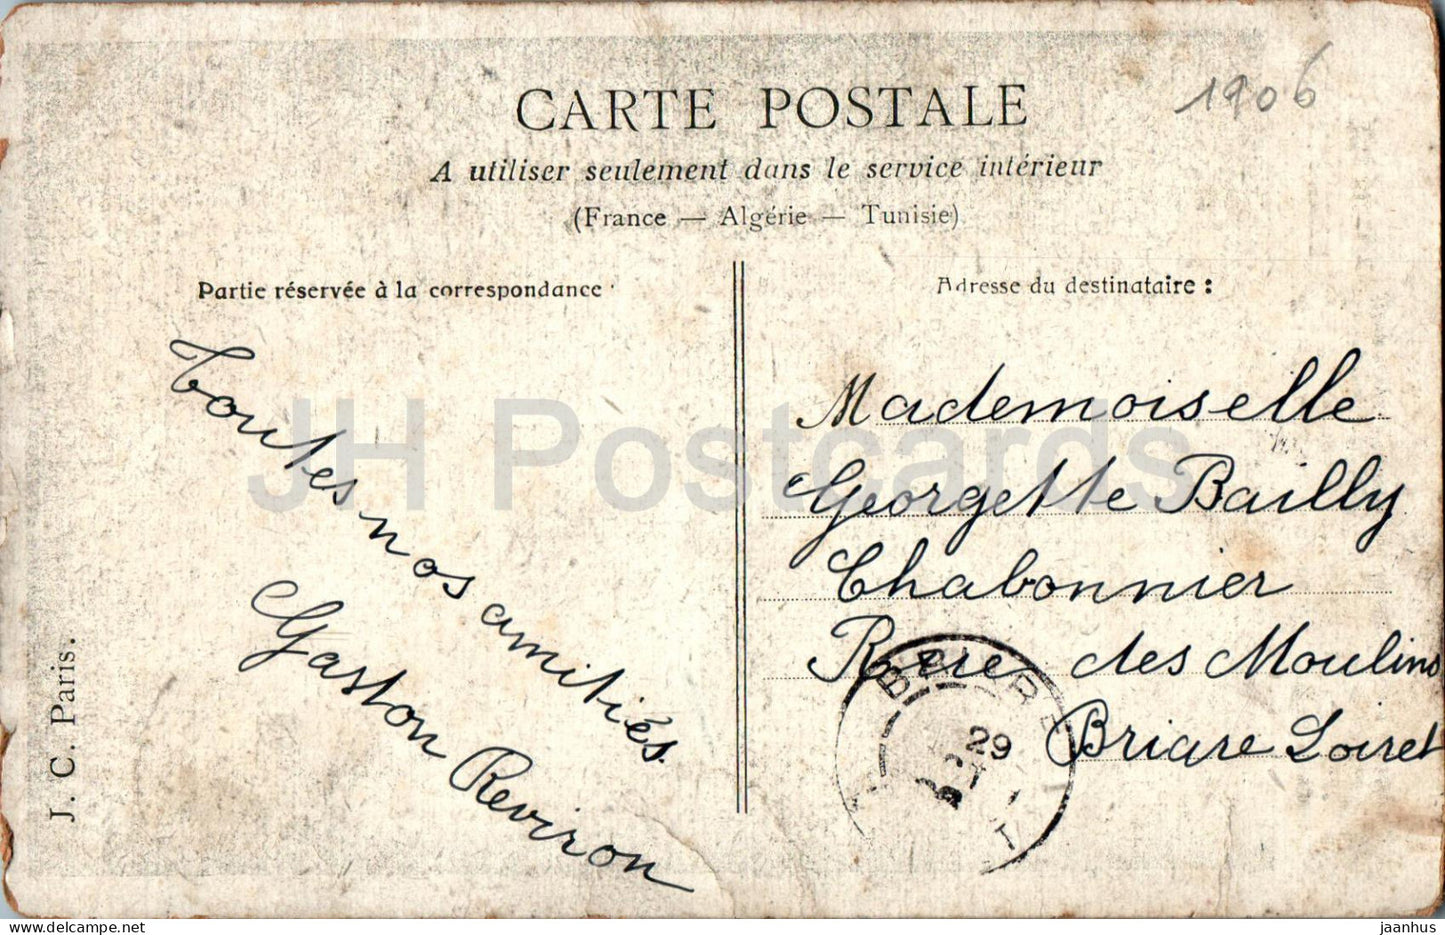 Charette Fleurie - Mädchen - alte Postkarte - 1906 - Frankreich - gebraucht 